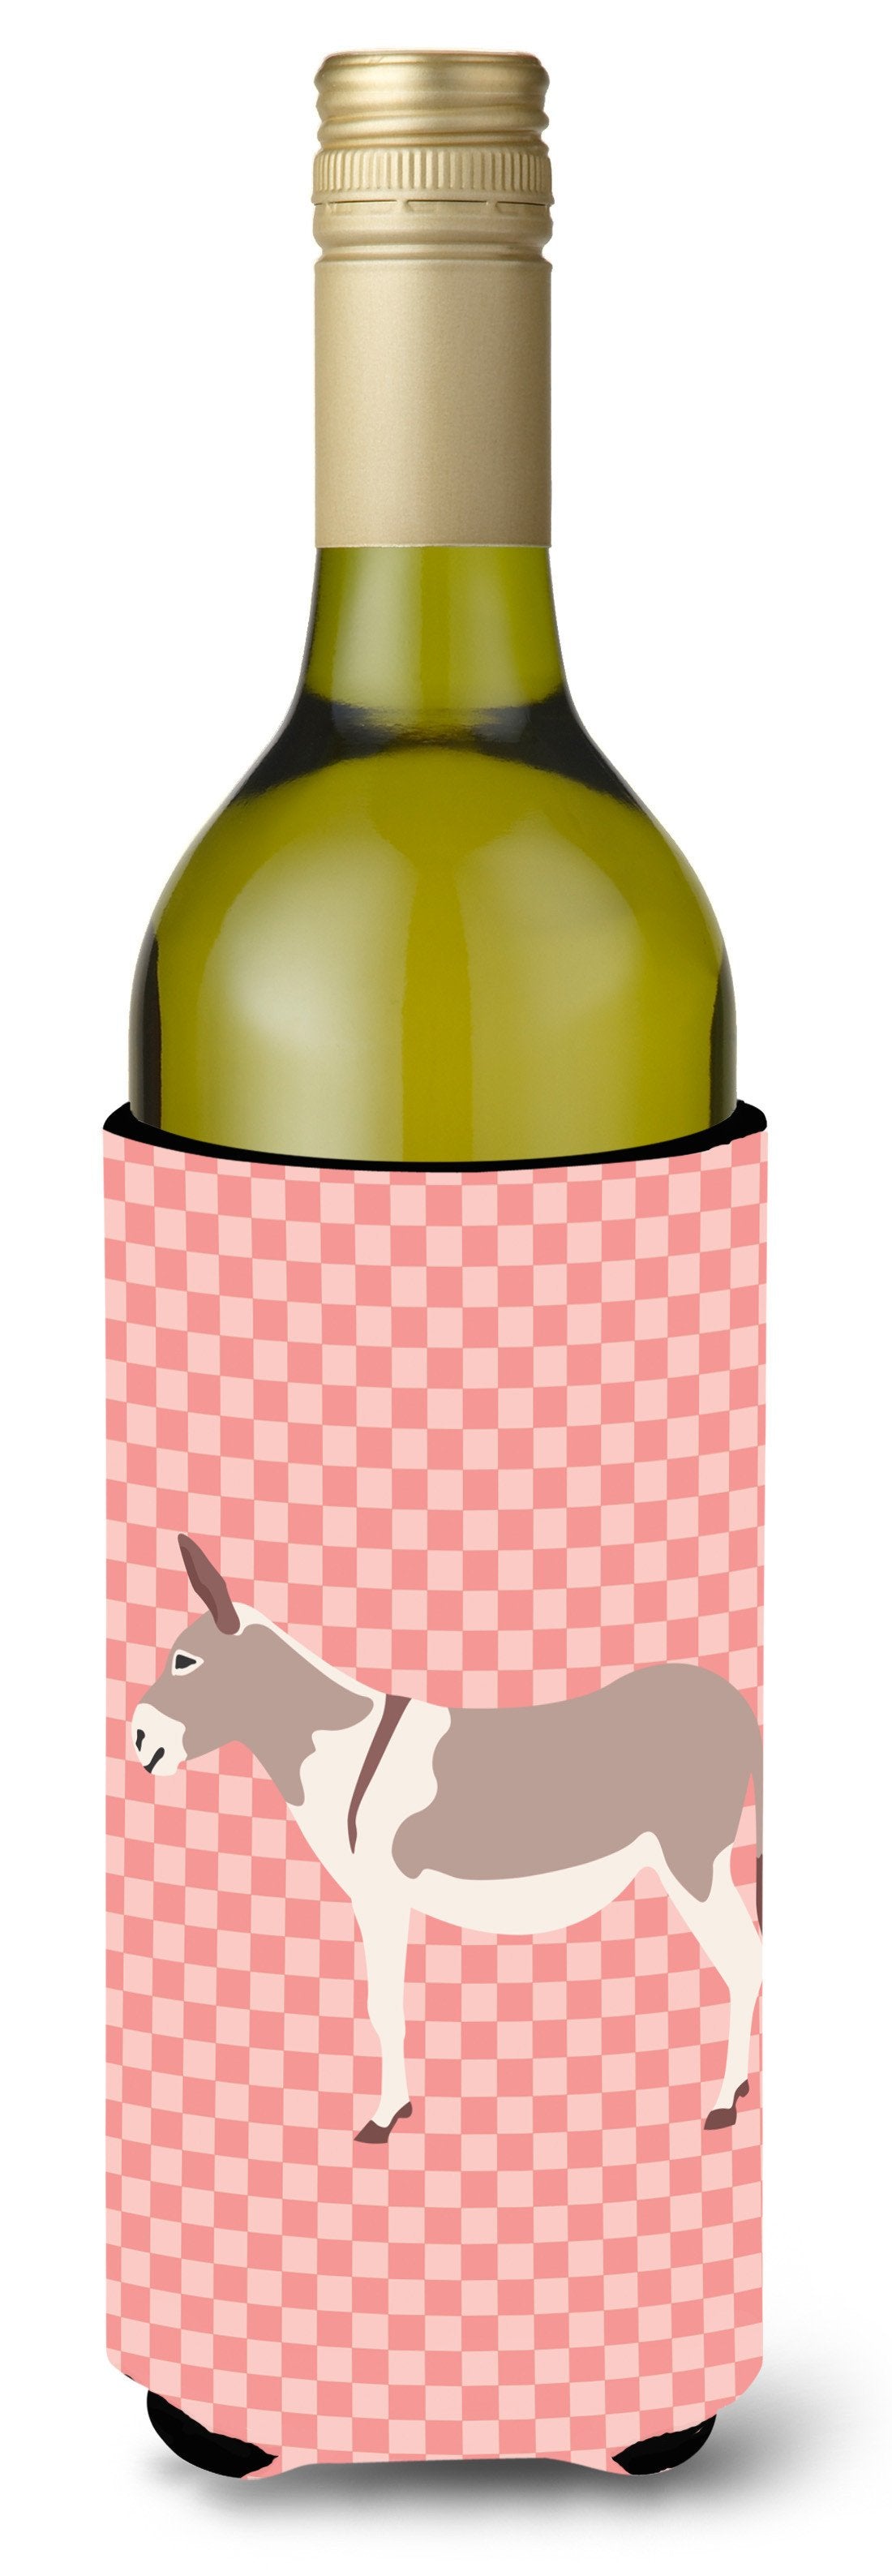 Australian Teamster Donkey Pink Check Wine Bottle Beverge Insulator Hugger BB7846LITERK by Caroline's Treasures